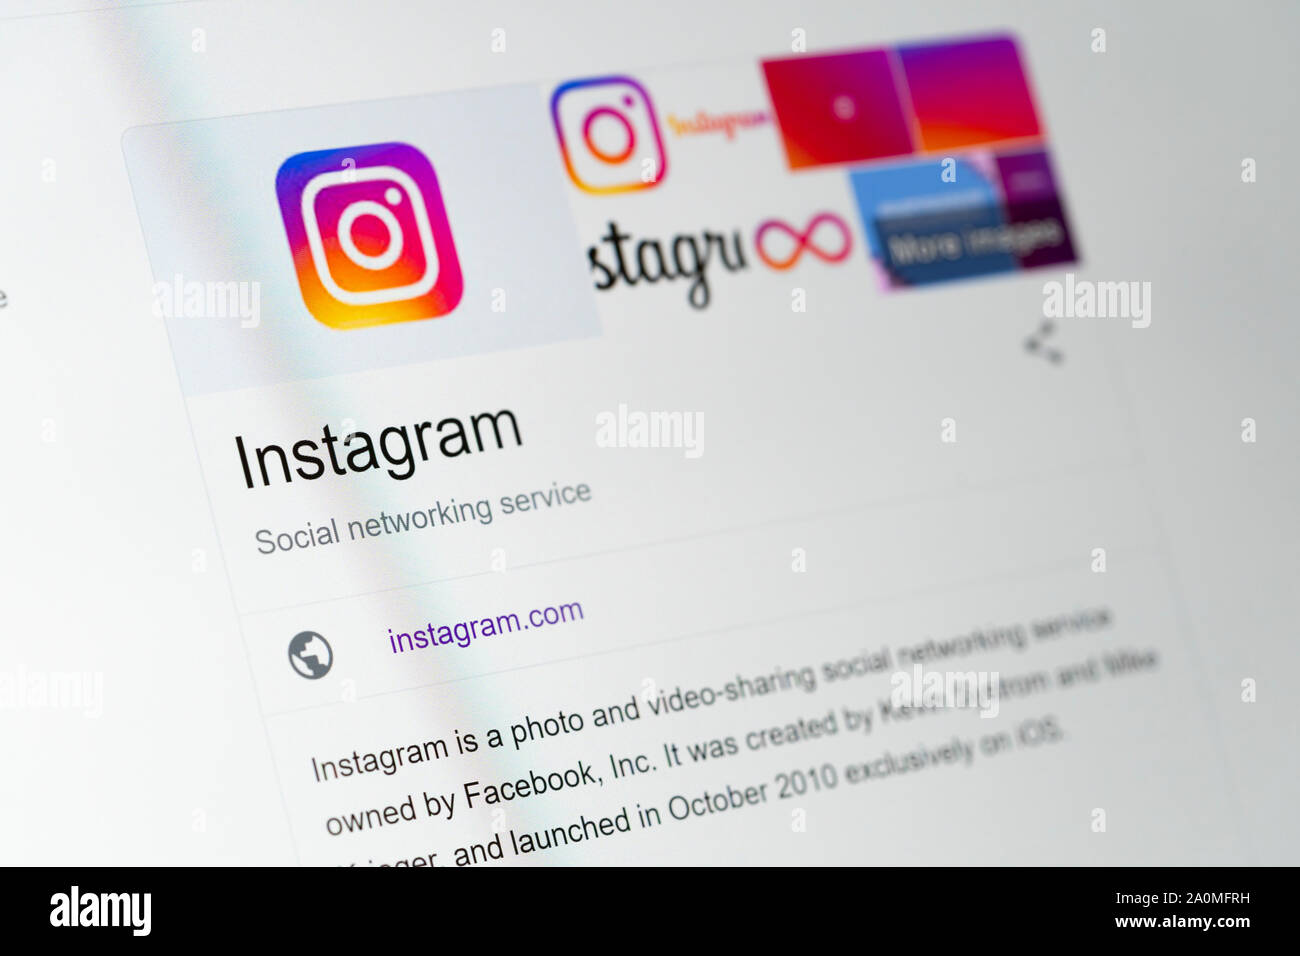 Une vue rapprochée de l'écran d'un ordinateur page web montrant la page d'accueil de Facebook Instagram Banque D'Images